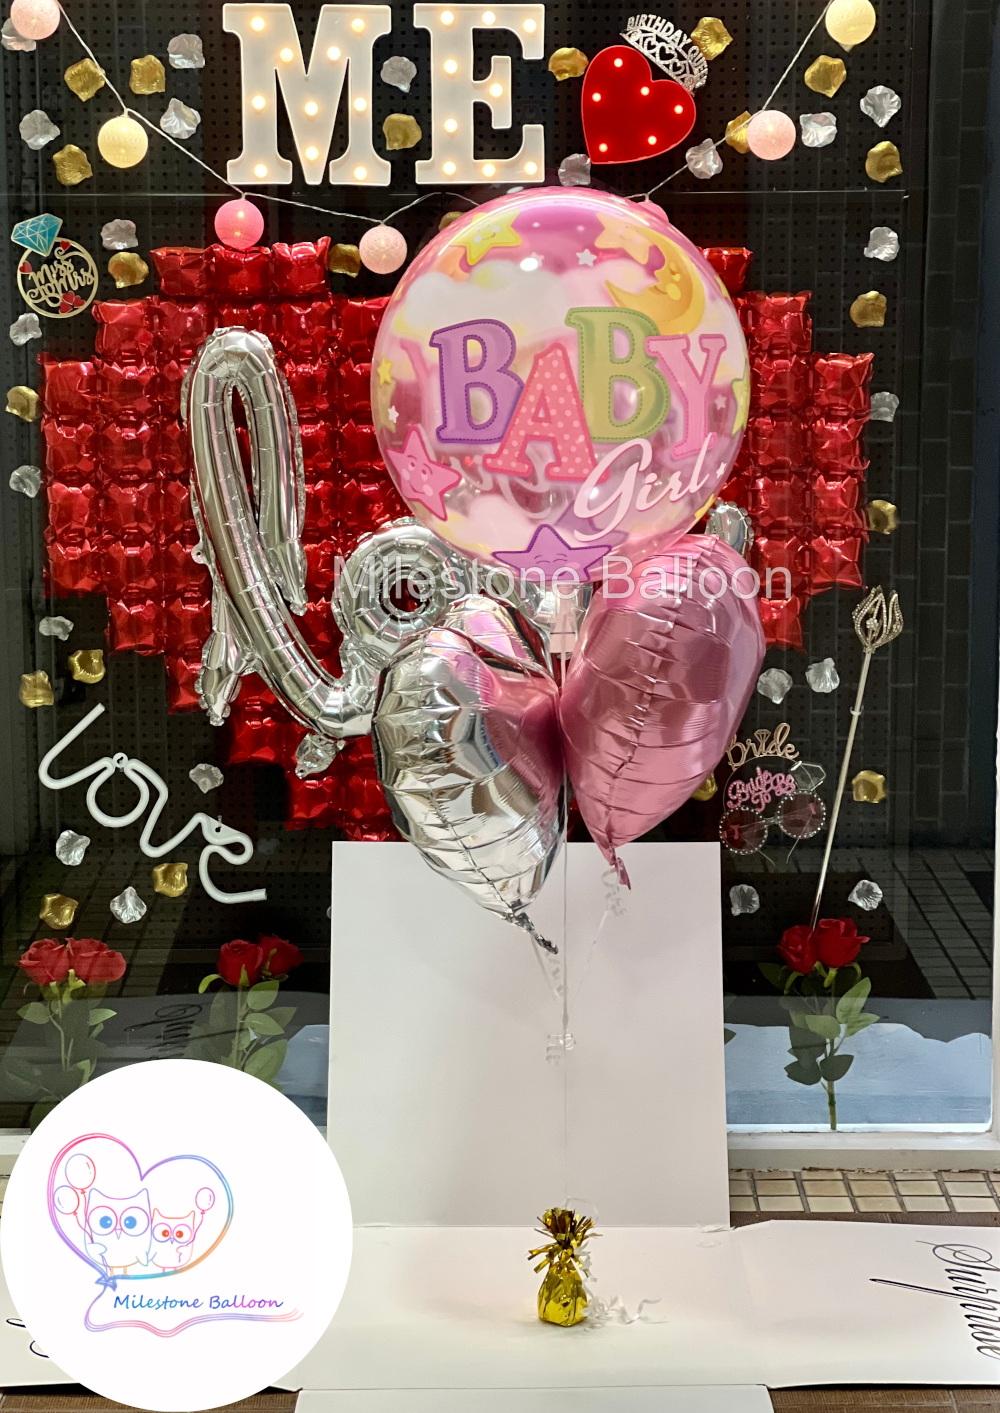 S3. 嬰兒性別揭曉驚喜氣球盒套裝 Gender Reveal Surprise Box